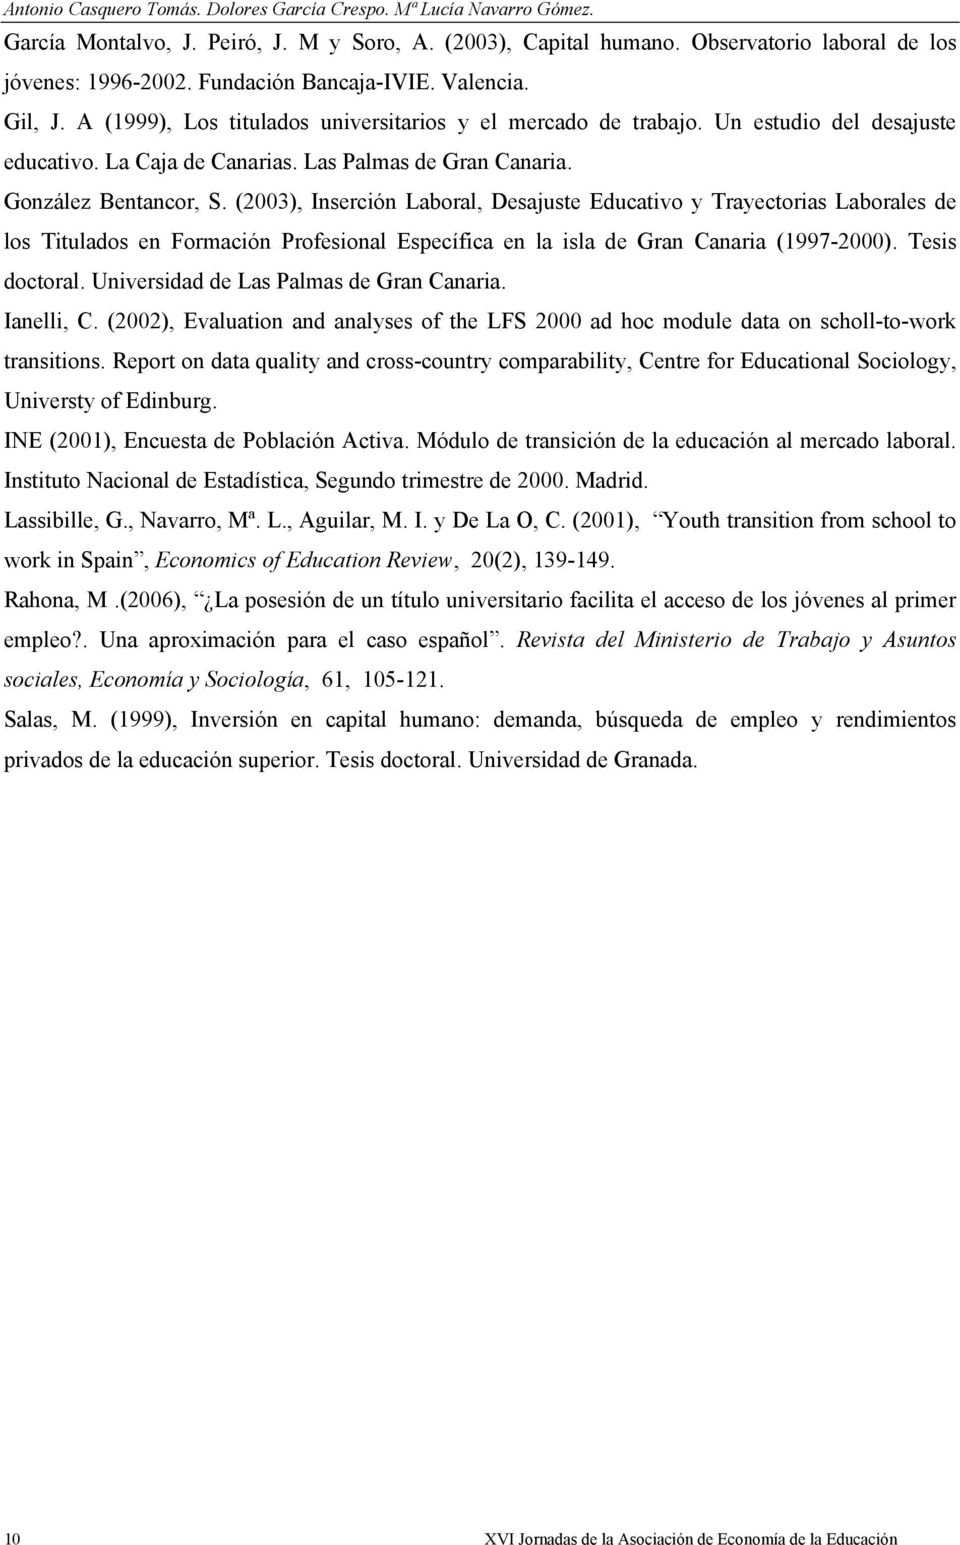 González Bentancor, S. (2003), Inserción Laboral, Desajuste Educativo y Trayectorias Laborales de los Titulados en Formación Profesional Específica en la isla de Gran Canaria (1997-2000).